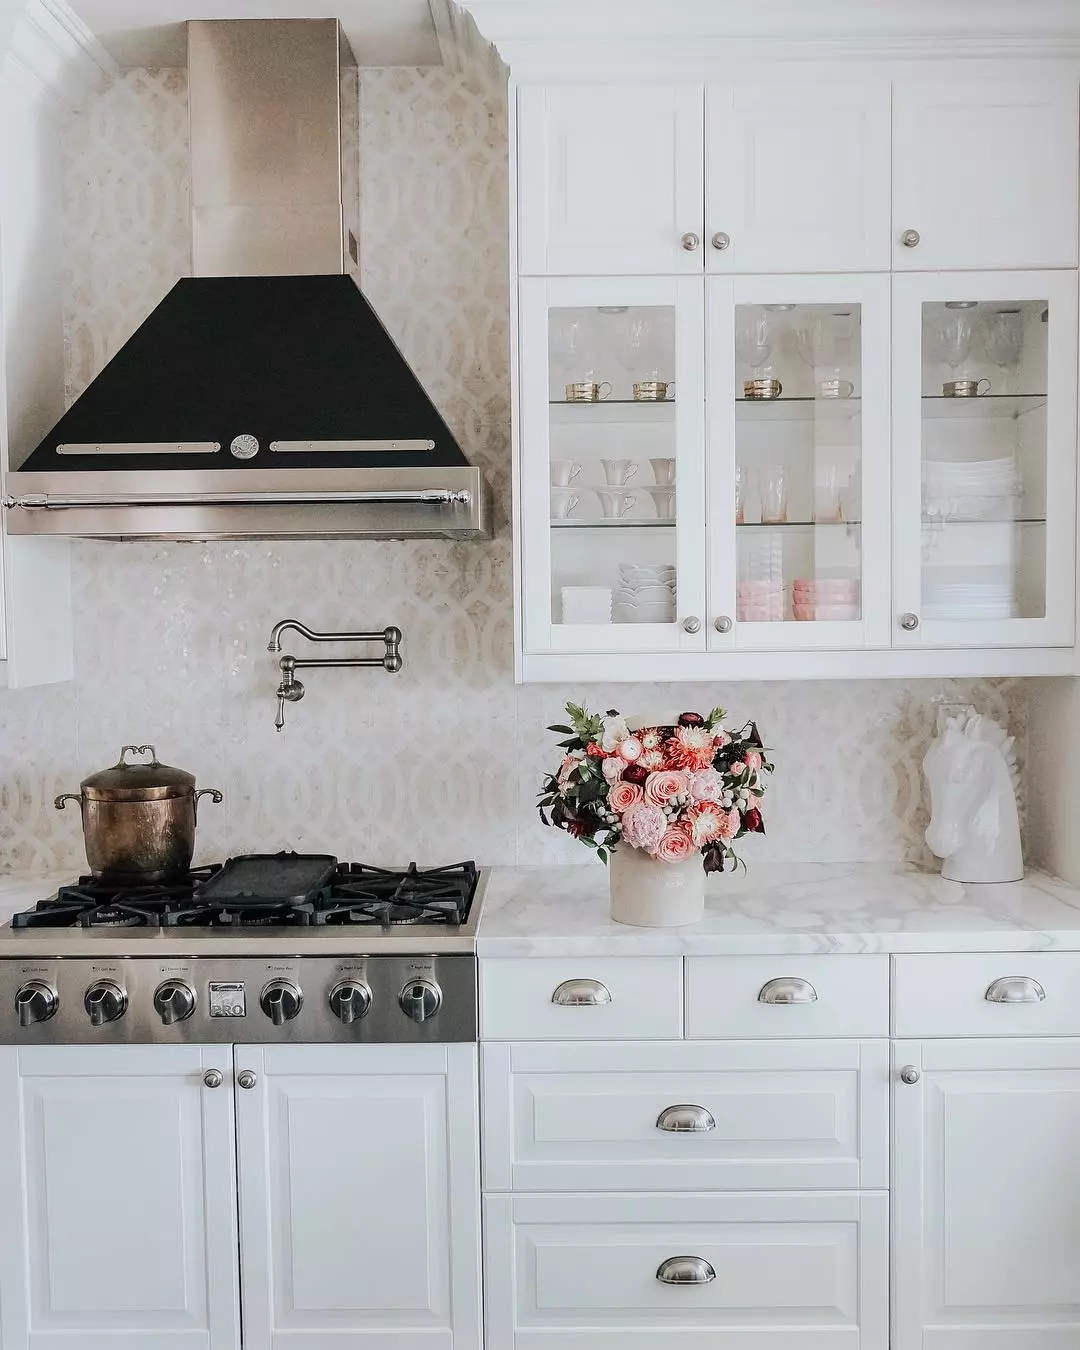 Λευκή κουζίνα με στοιχεία κλασικής φωτογραφίας